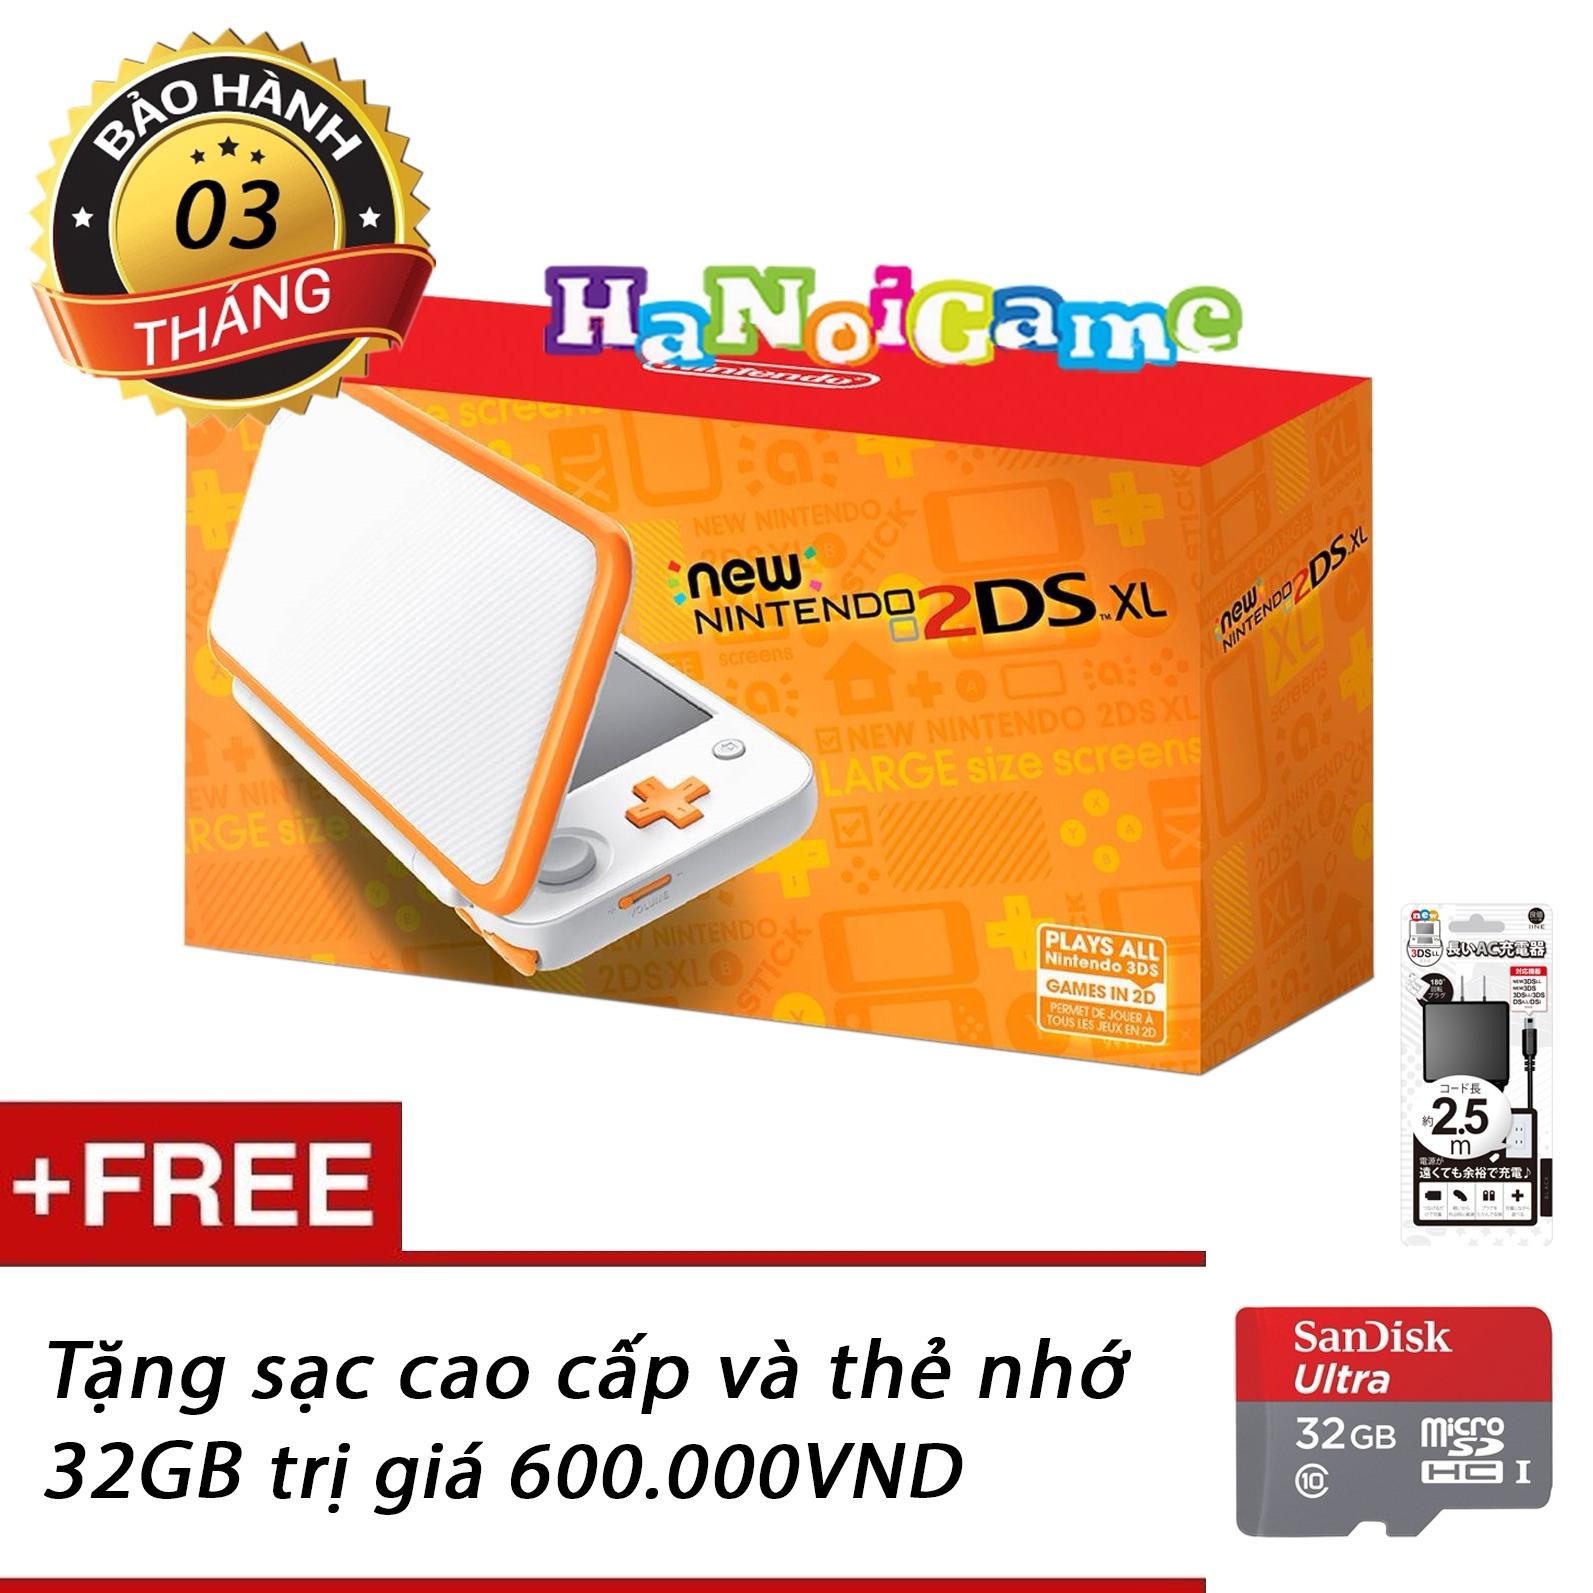 Máy Nintendo New 2DS XL White kèm thẻ nhớ 32GB HaNoiGame